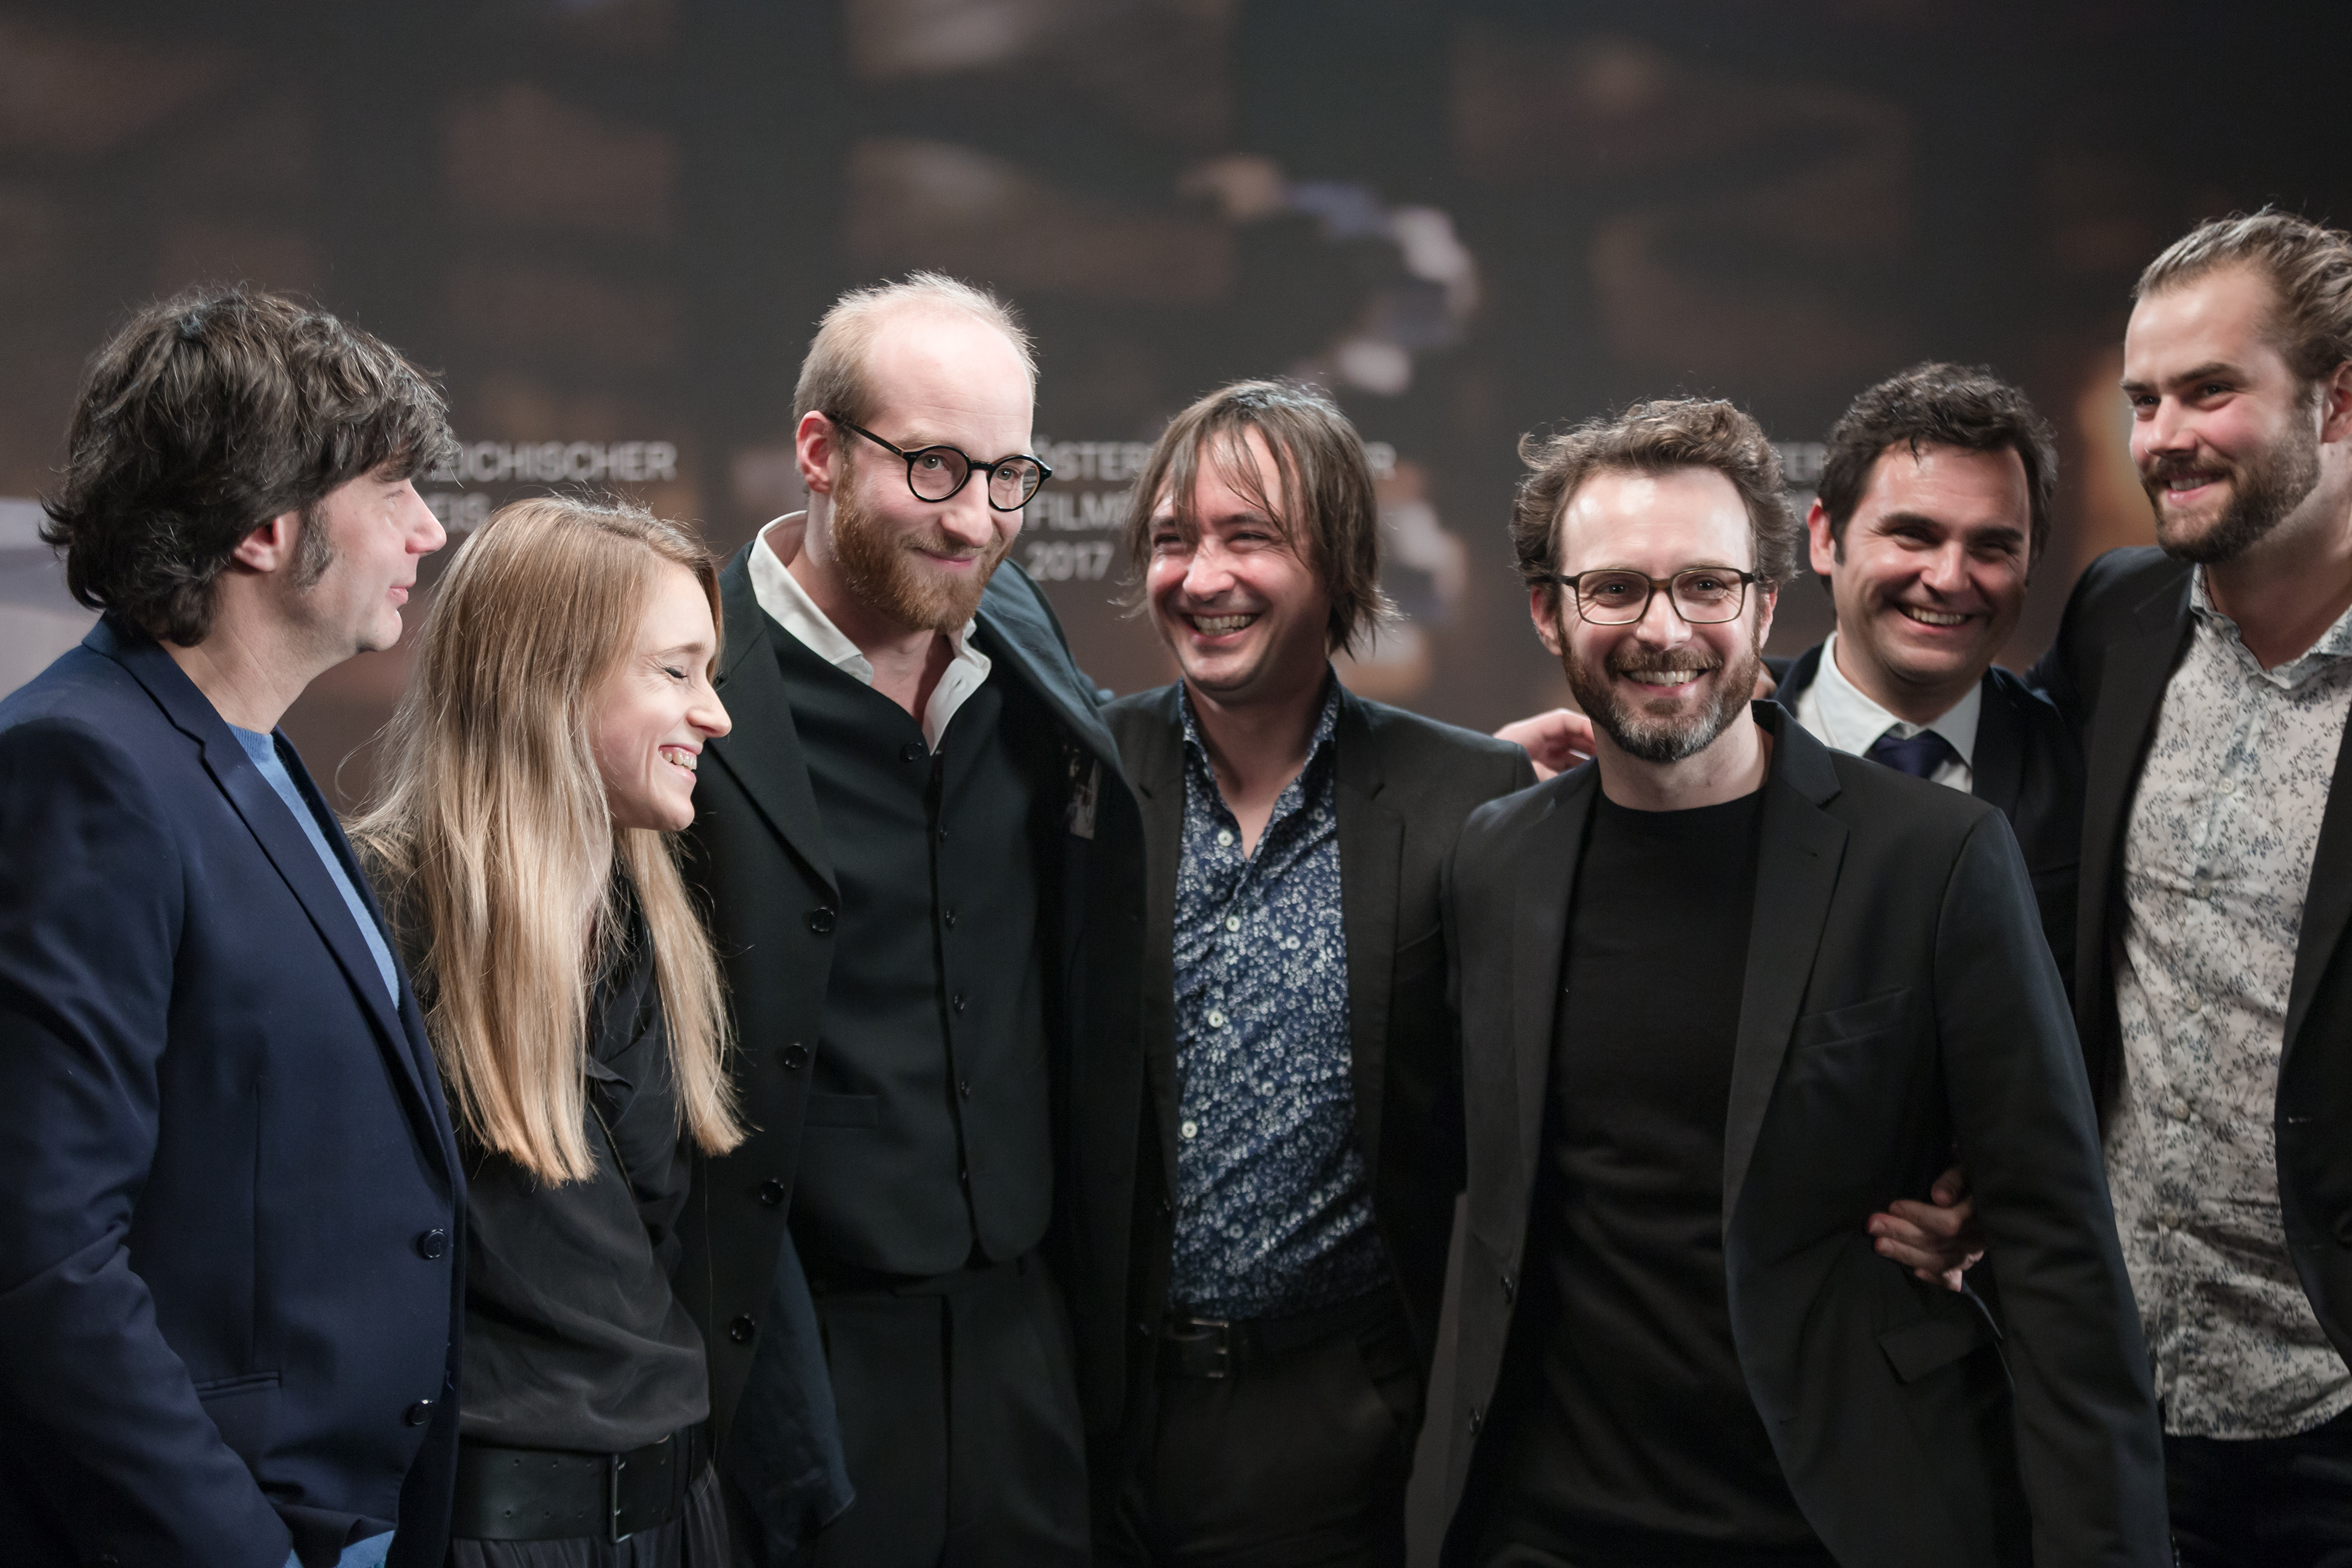 Österreichischer Filmpreis 2017 photo call Kater team 1